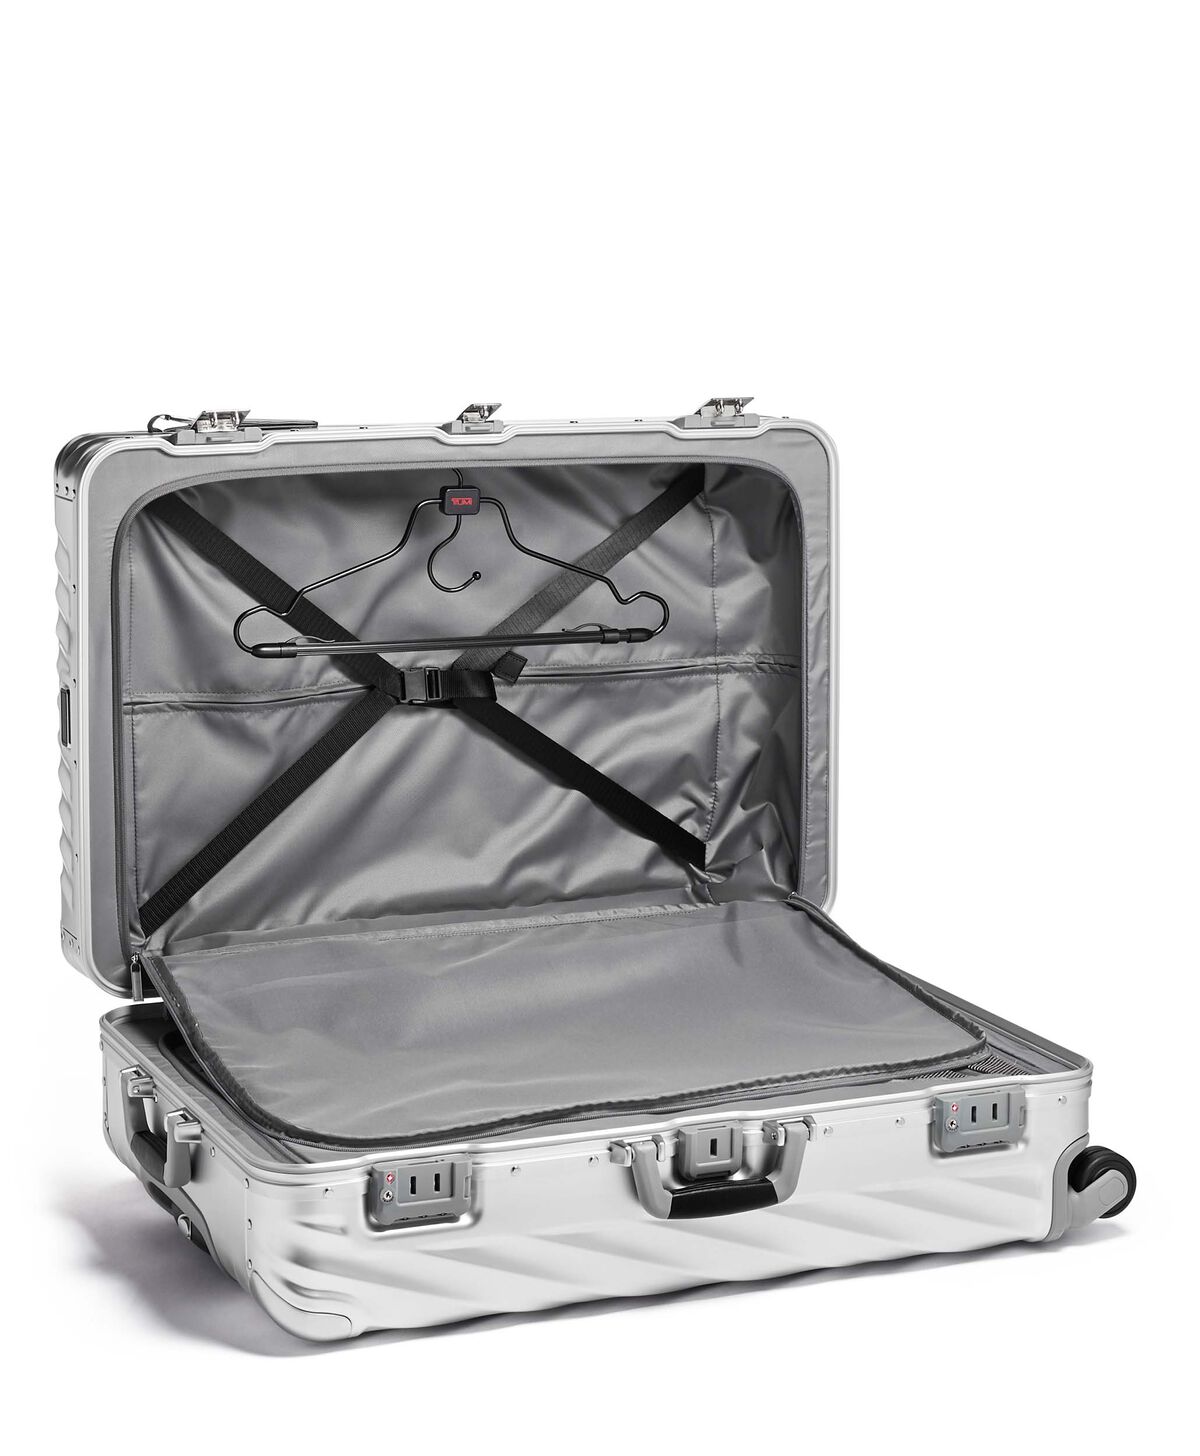 Tumi Koffer für längere Reisen